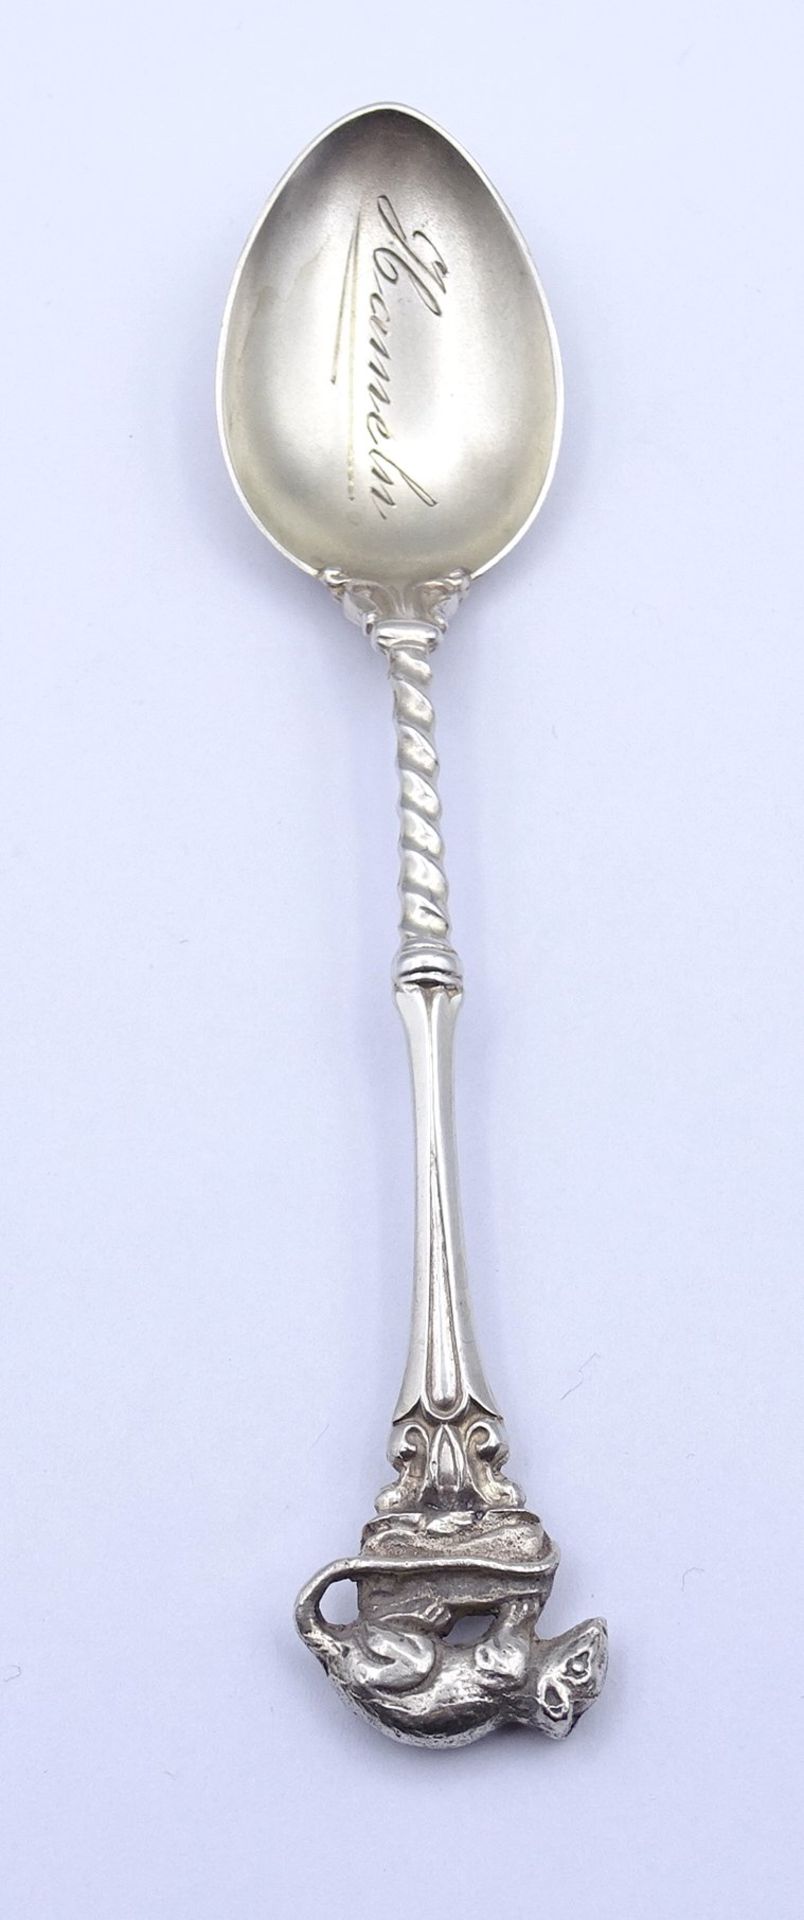 Einzelner Teelöffel, Silber 0.800, mit aufgesetzter Ratte , "bez. Hameln 1930", L. 11,0cm, 13,3g. - Bild 2 aus 5